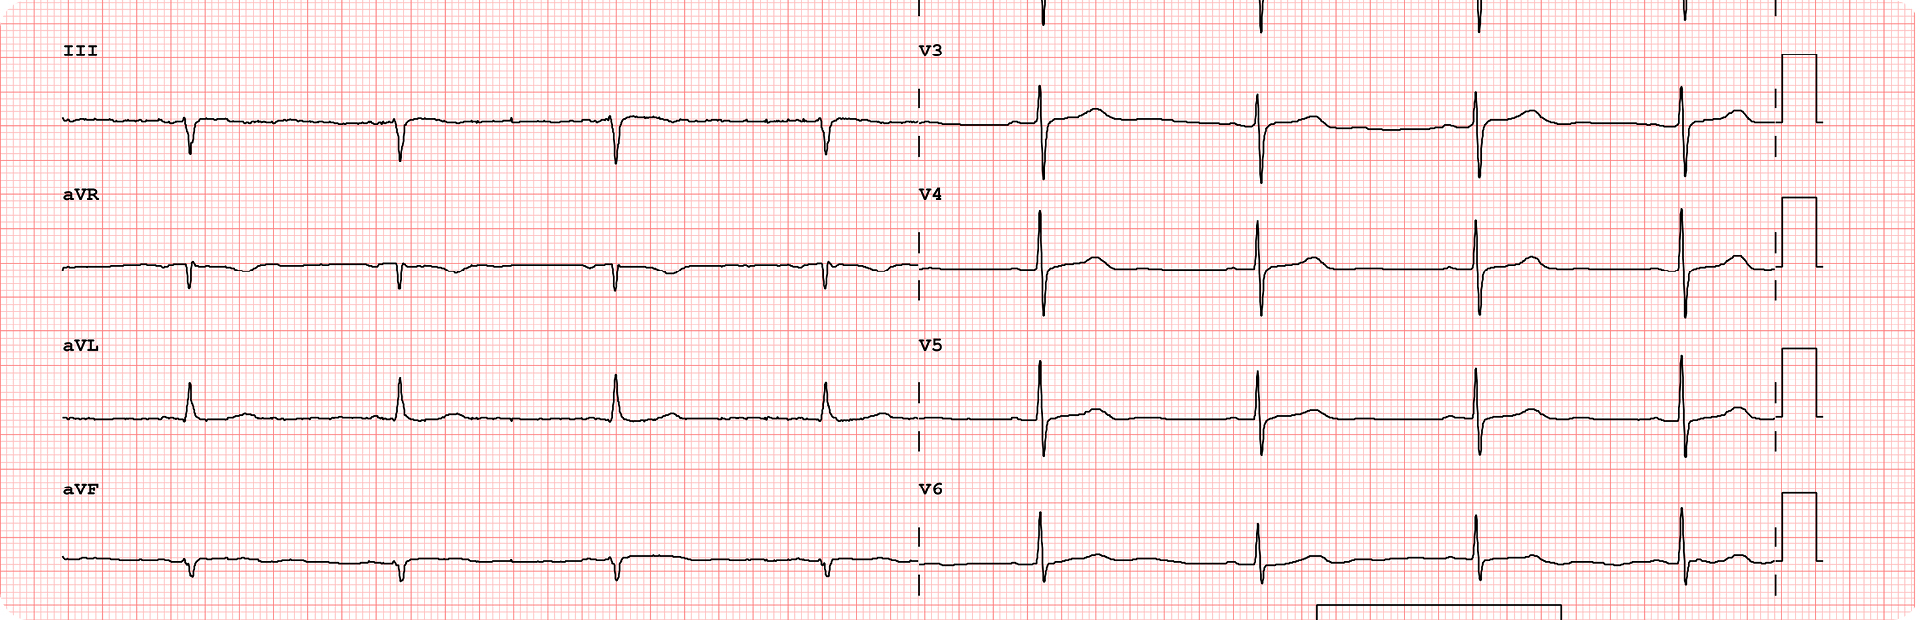 Bradycardia With A Pulse Algorithm